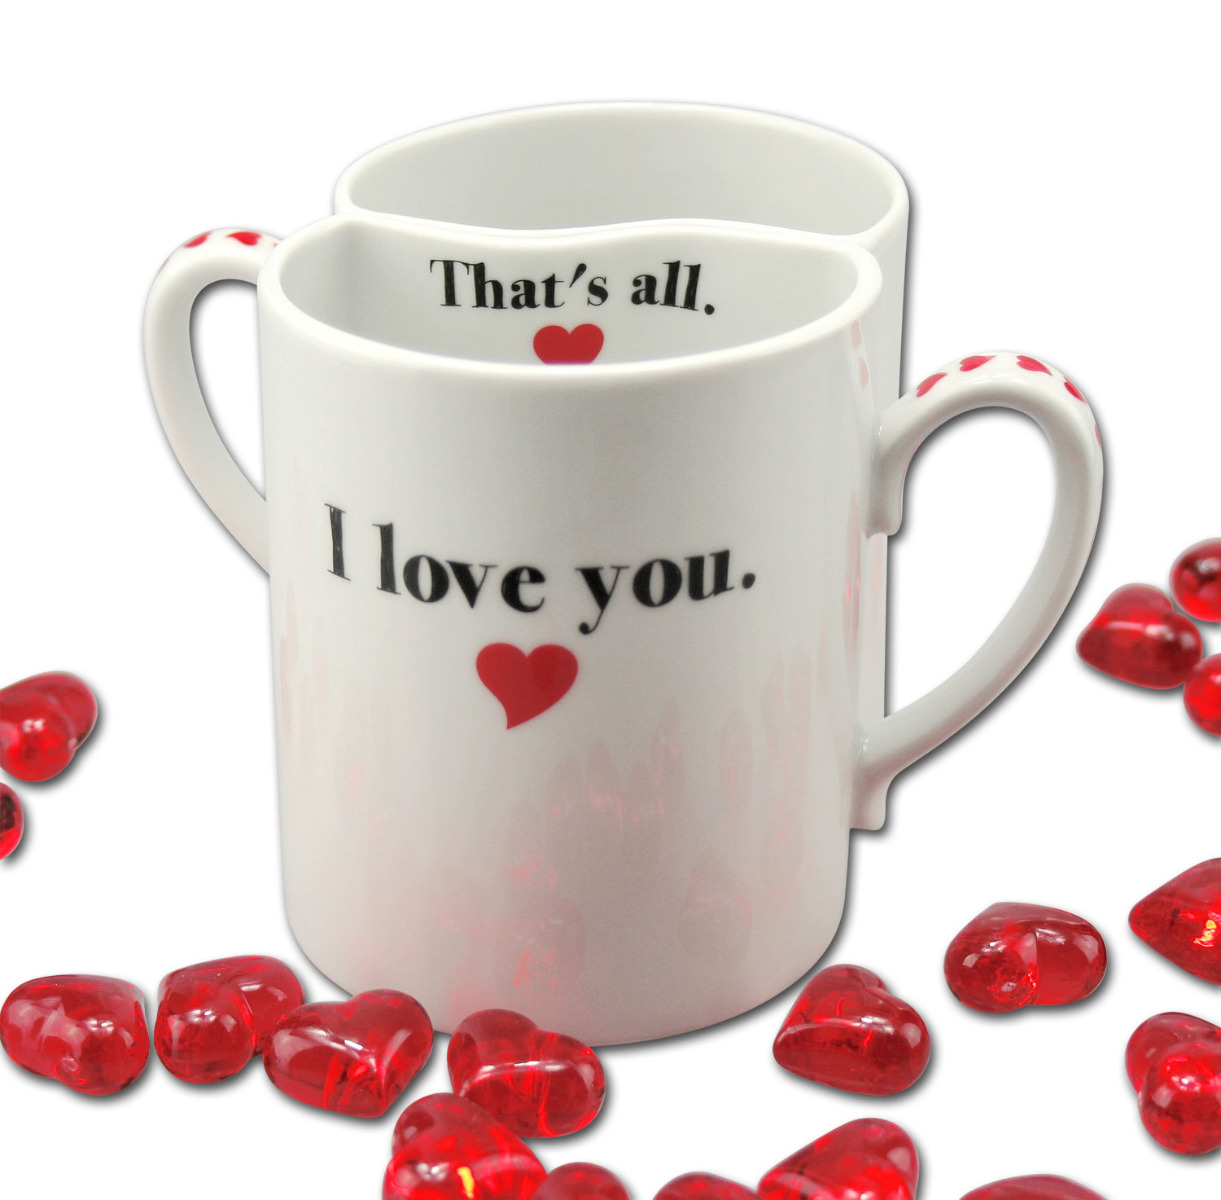 Lustige Tasse - Paartasse Valentinstag - I love you -  That's all. von PorcelainSite GmbH